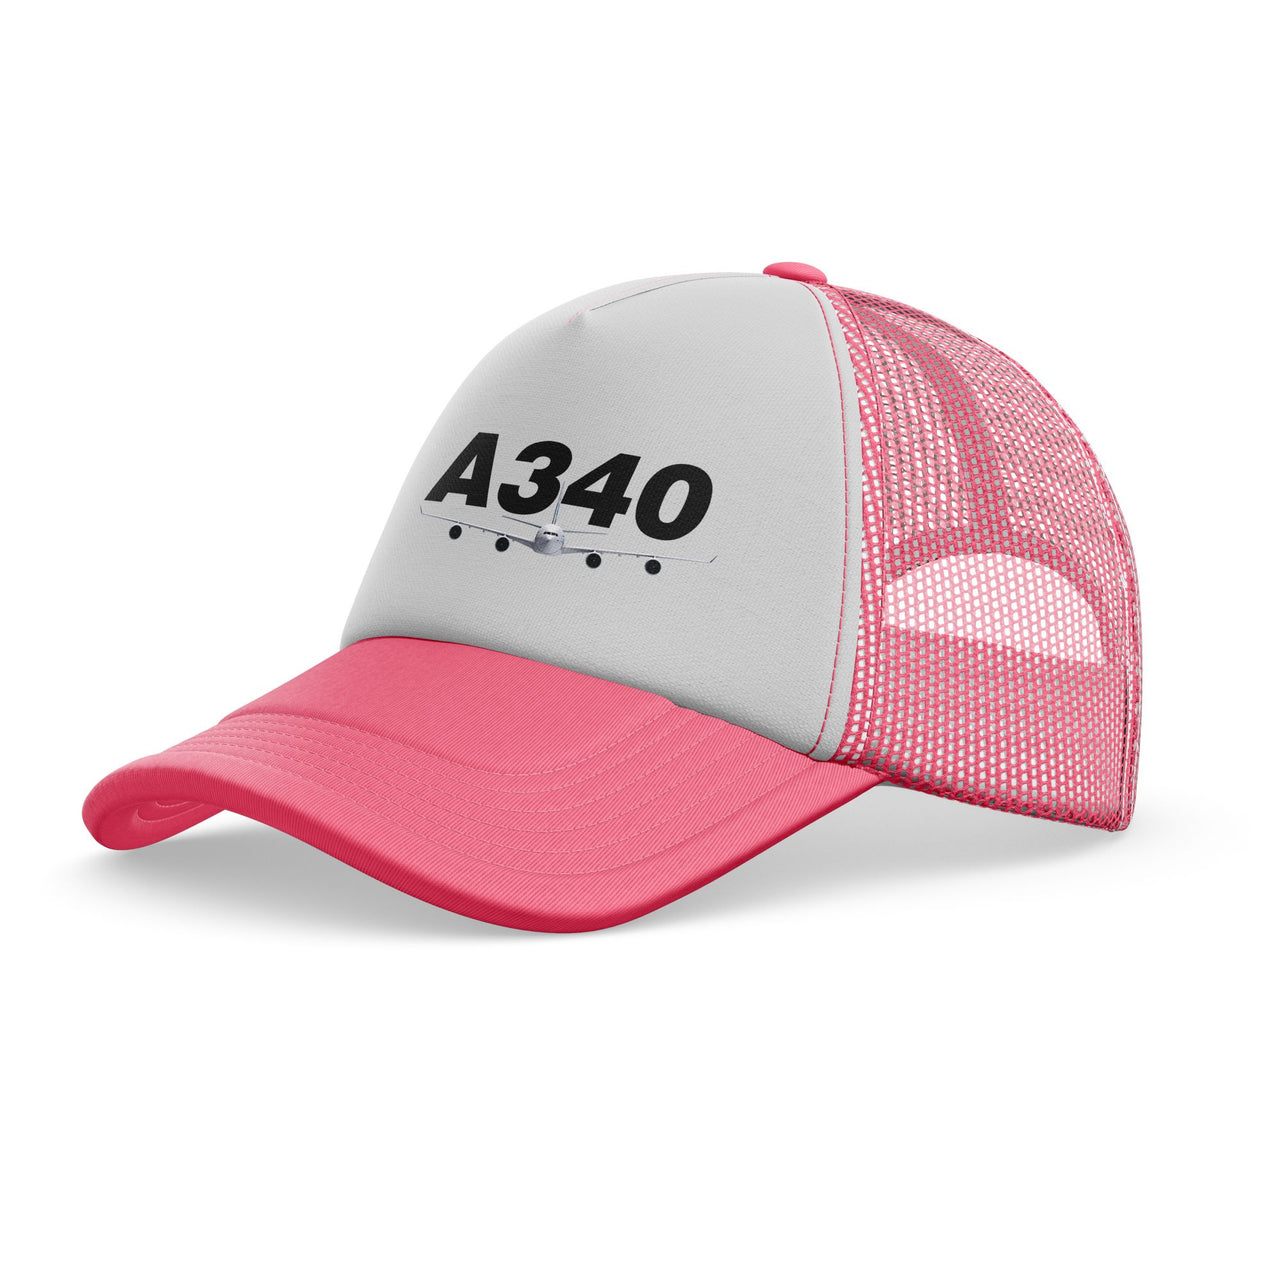 Super Airbus A340 Designed Trucker Caps & Hats